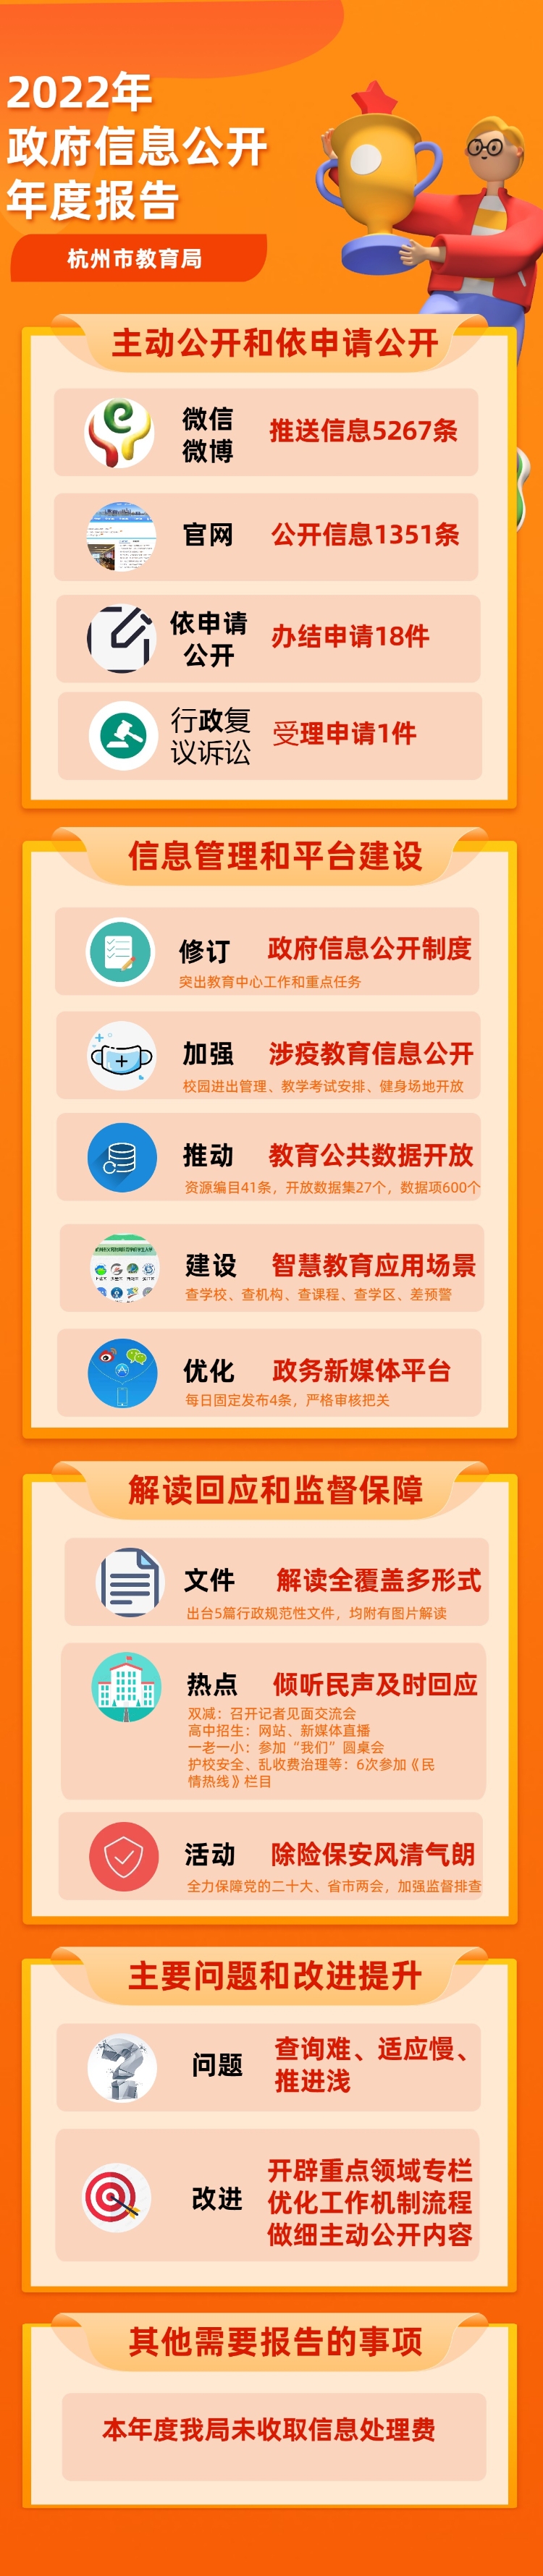 杭州市教育局2022年政府信息公开年度报告图片版.jpg